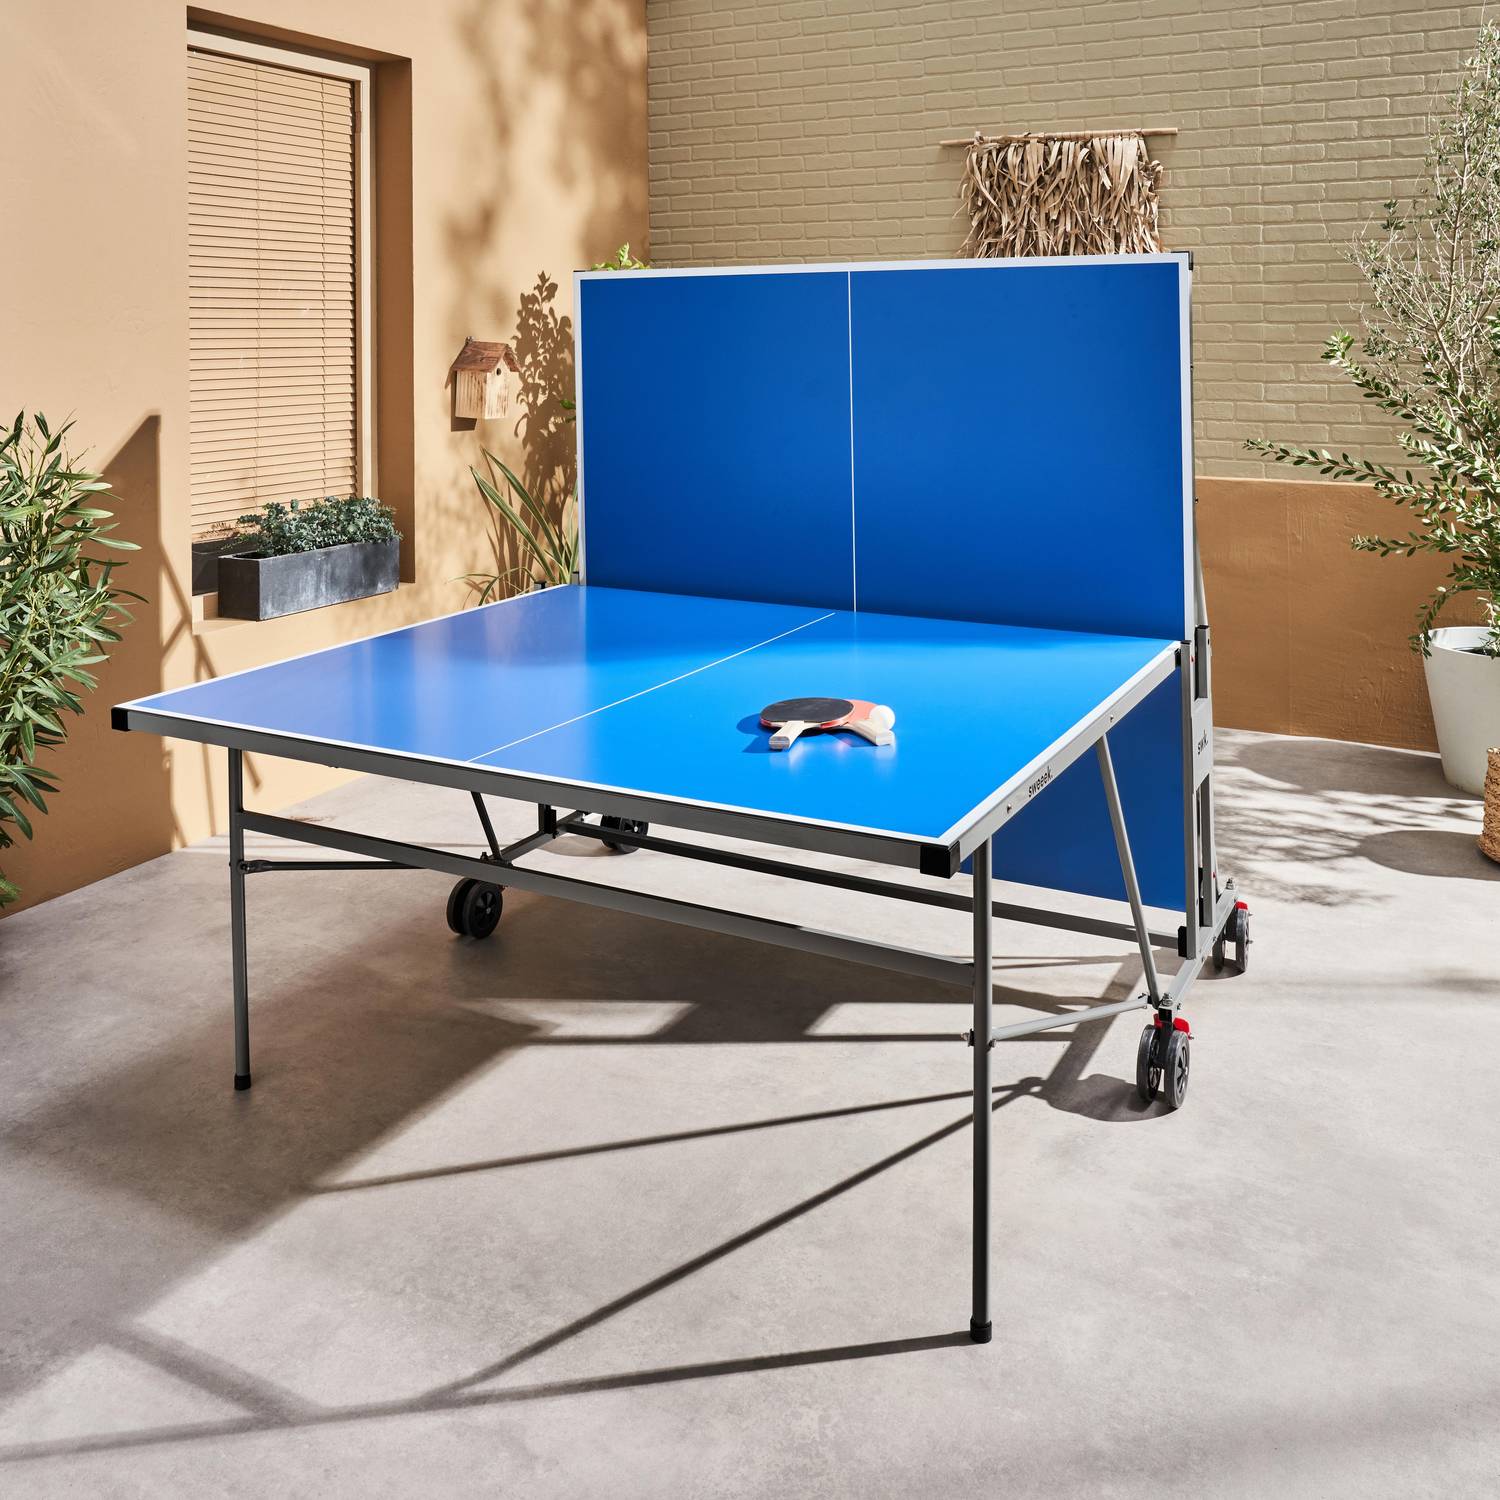 Table de ping pong INDOOR bleue - table pliable avec 4 raquettes et 6 balles, pour utilisation intérieure, sport tennis de table Photo2